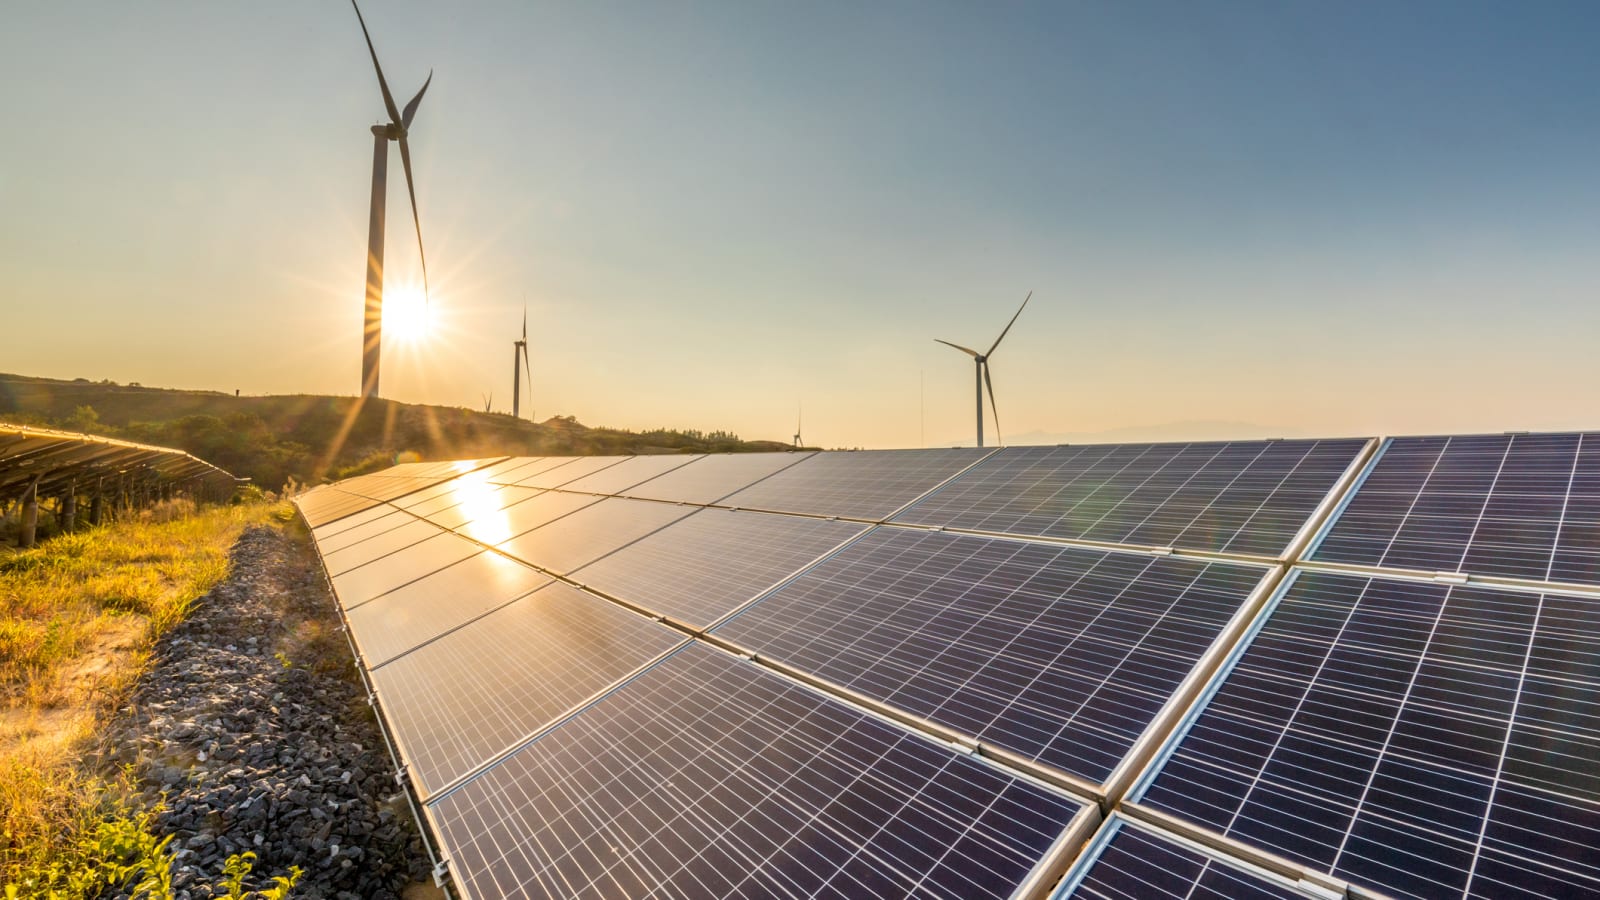 Galata Wind, rüzgar ve güneş enerjisiyle yüzde 33,1 büyüdü, 331 milyon TL gelir elde etti